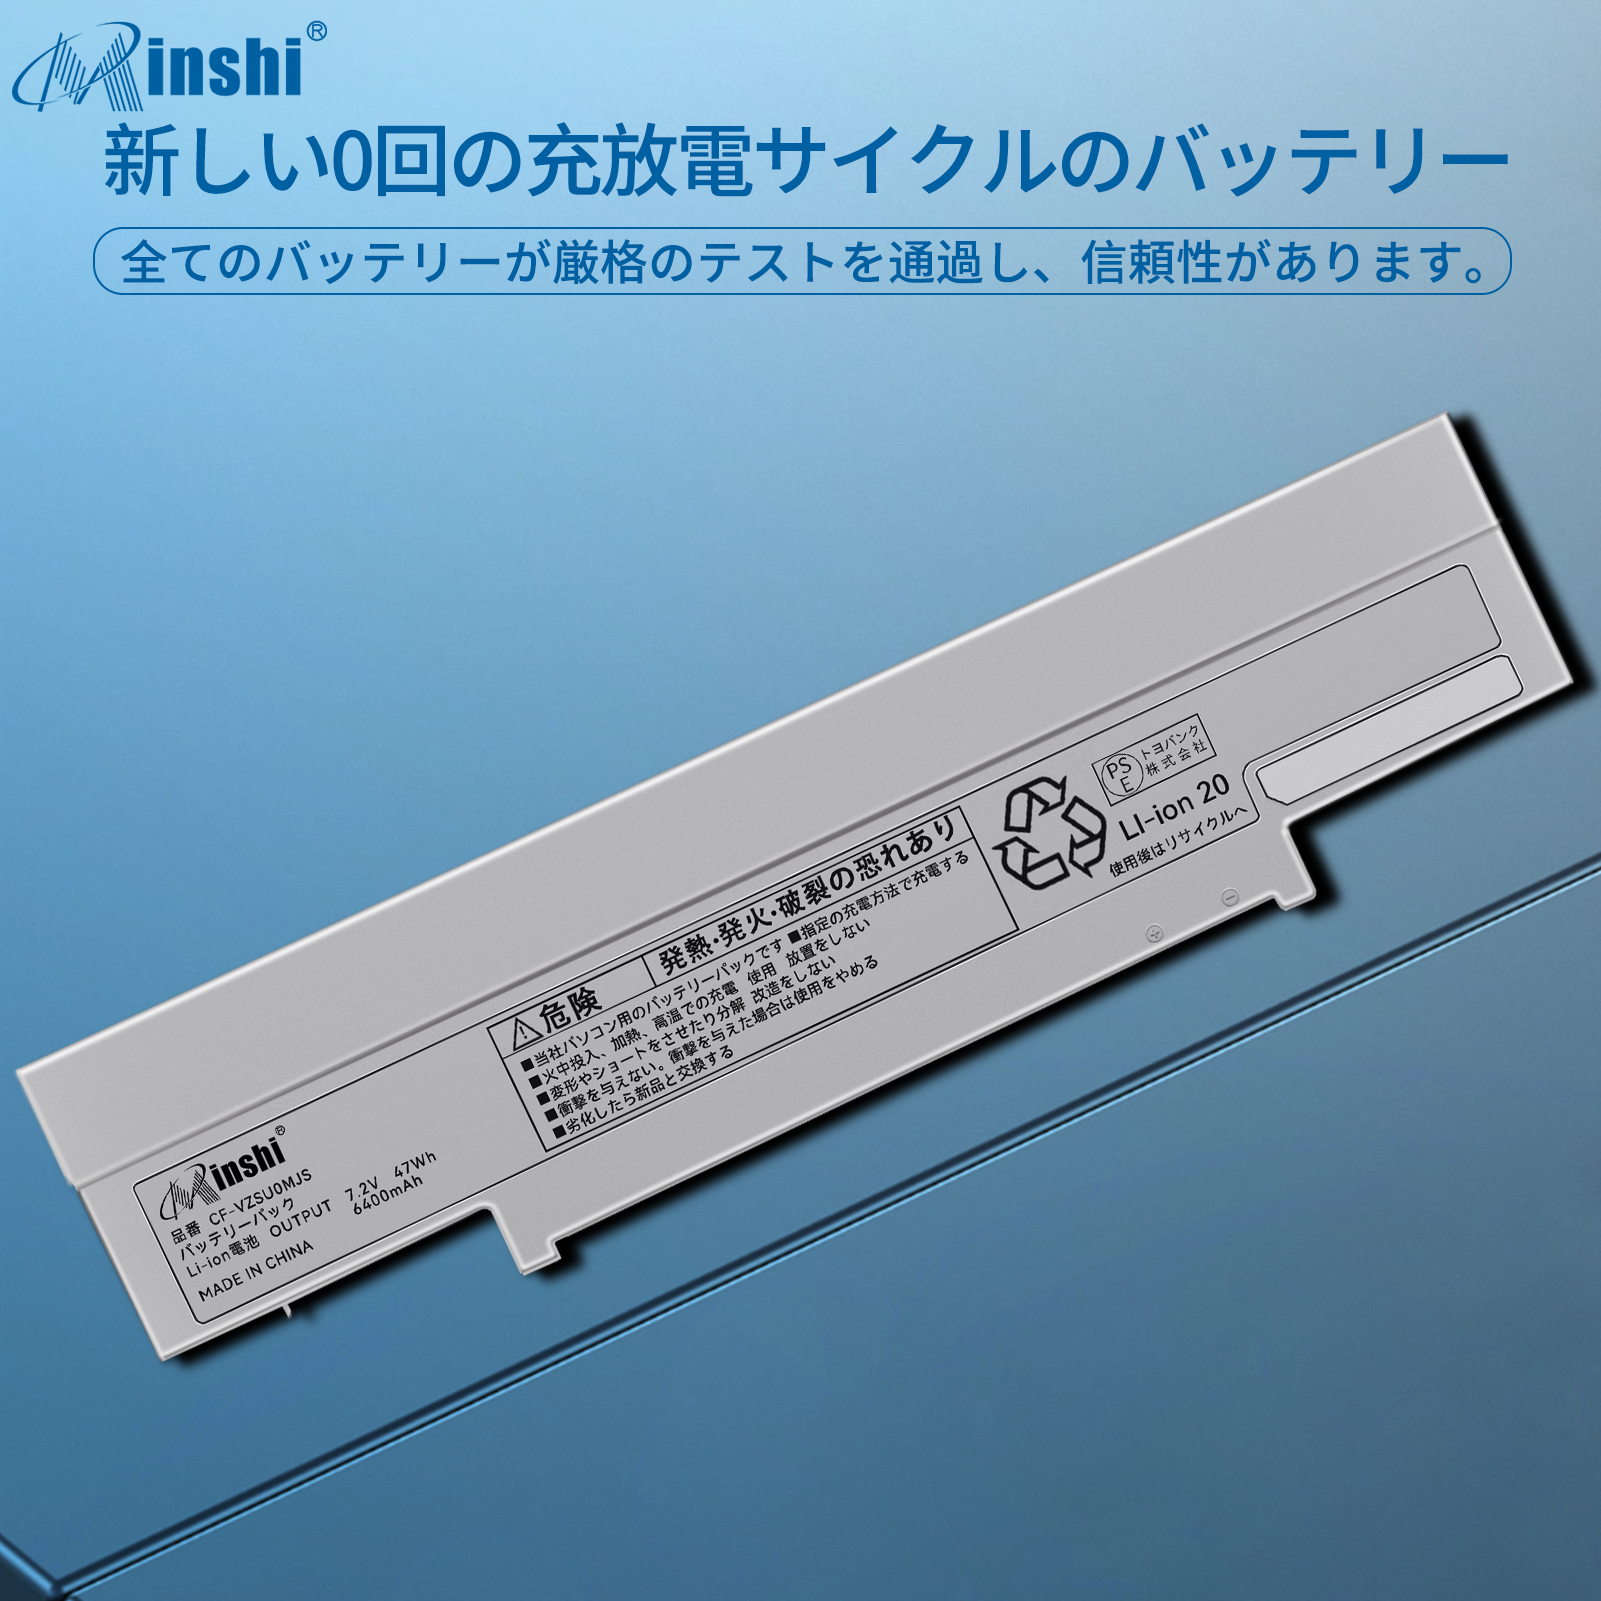  minshi SONY VJ8BPS52 対応 互換バッテリー 4610mAh PSE認定済 高品質交換用バッテリー